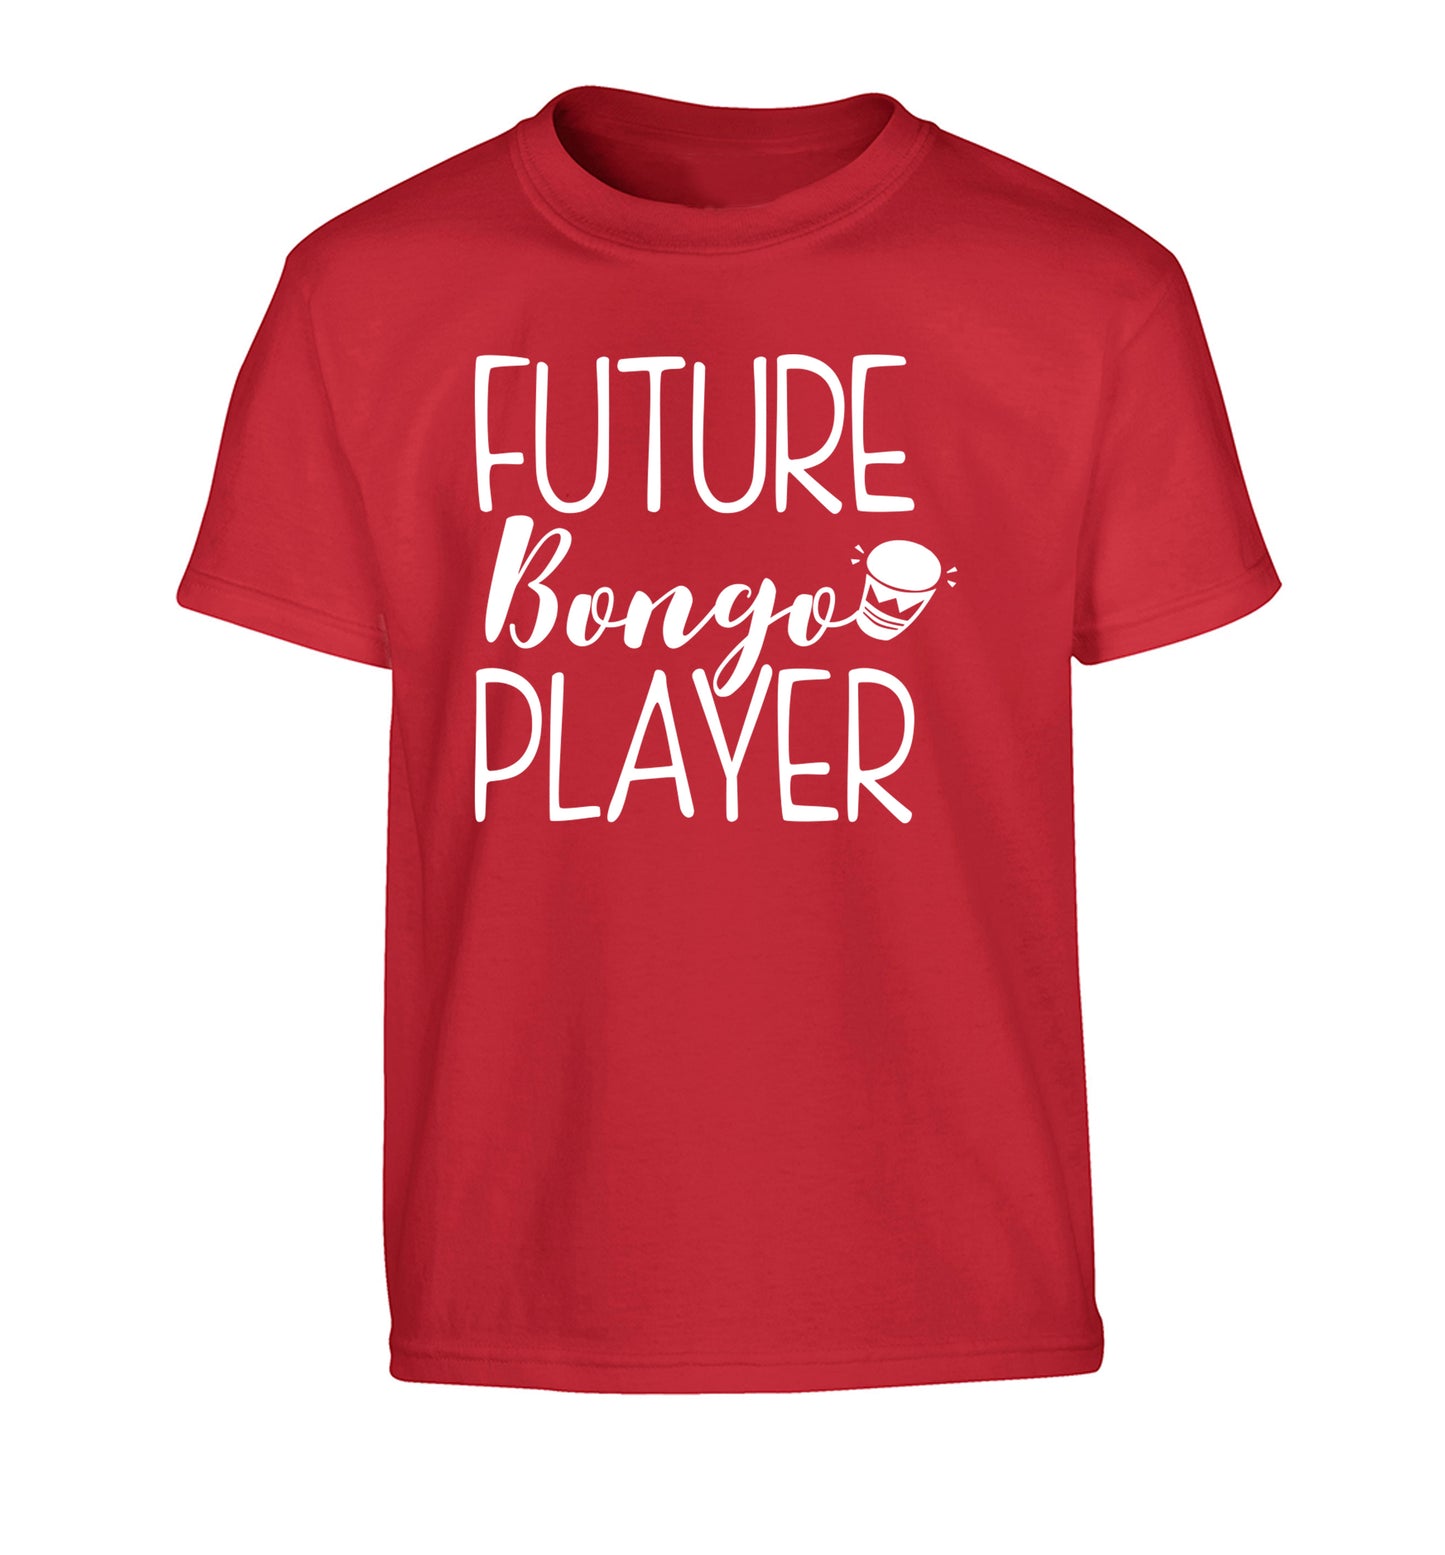 Future bongo player Children's red Tshirt 12-14 Years